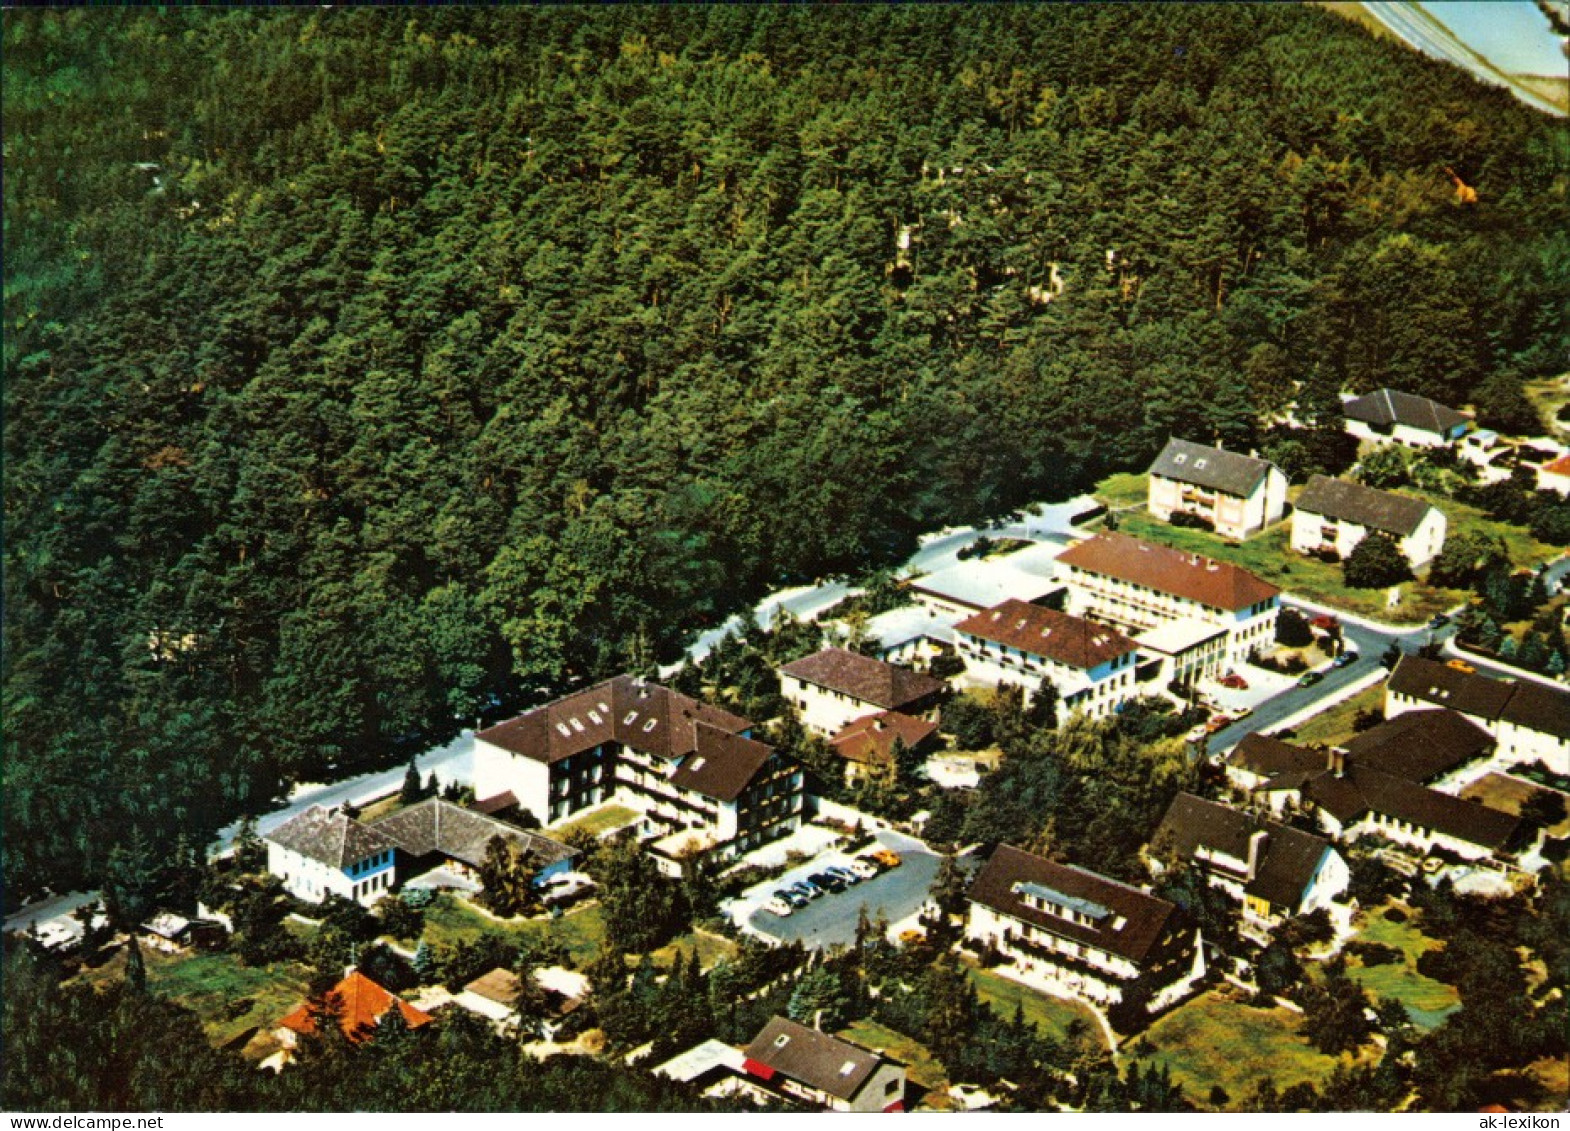 Bad Bevensen Luftbild: Kurpension - Sanatorium "Haus Wolfgang" 1995 - Bad Bevensen